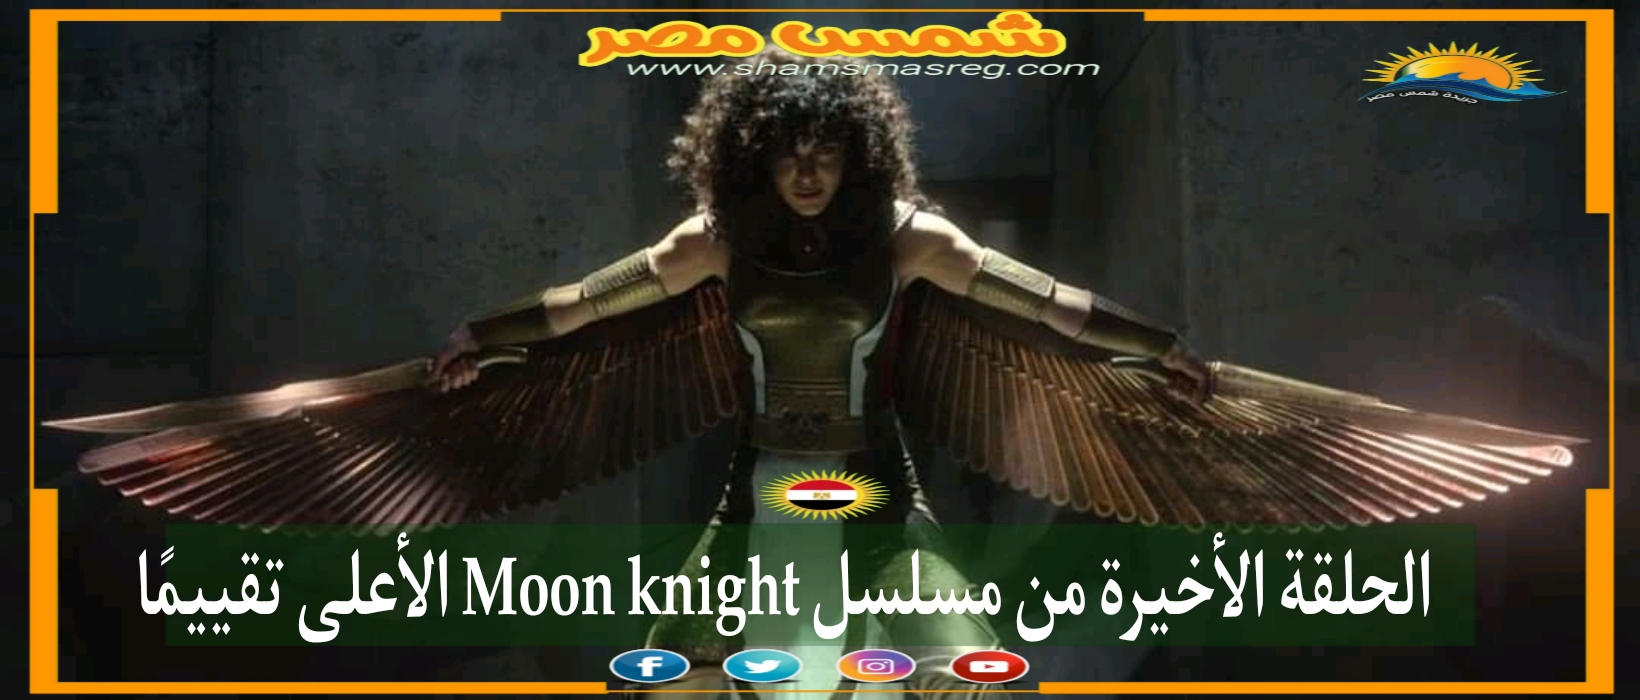 |شمس مصر|.. الحلقة الأخيرة من مسلسل Moon knight الأعلى تقييمًا